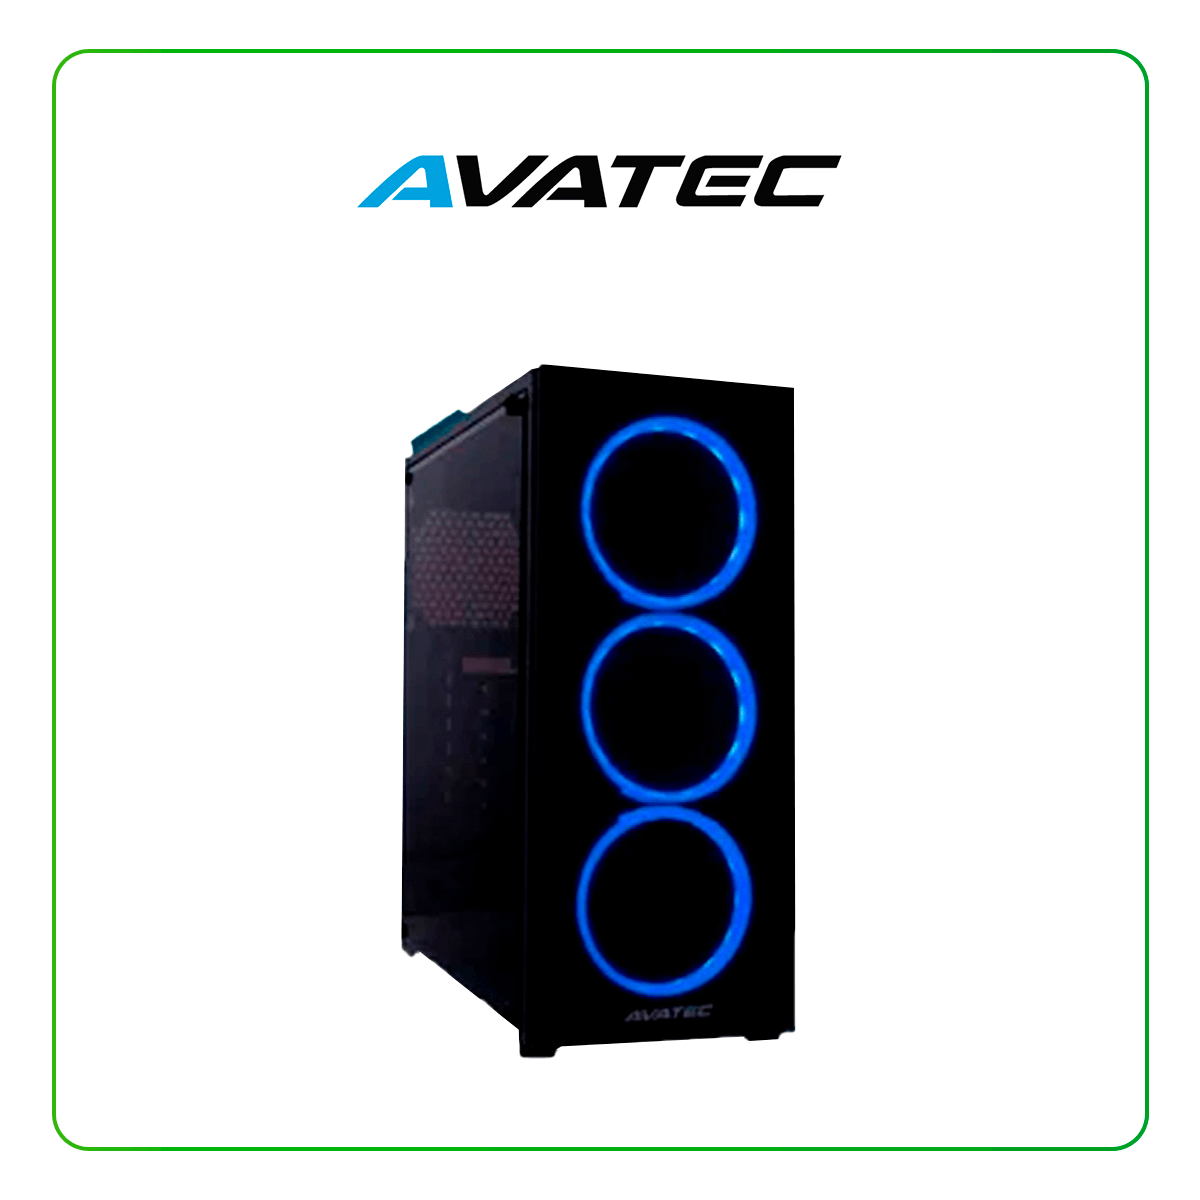 Case Avatec CCA-4603BL C/ Fuente real 450W, Panel Vidrio, Led-Azul. (AV-CCA-4603BL)